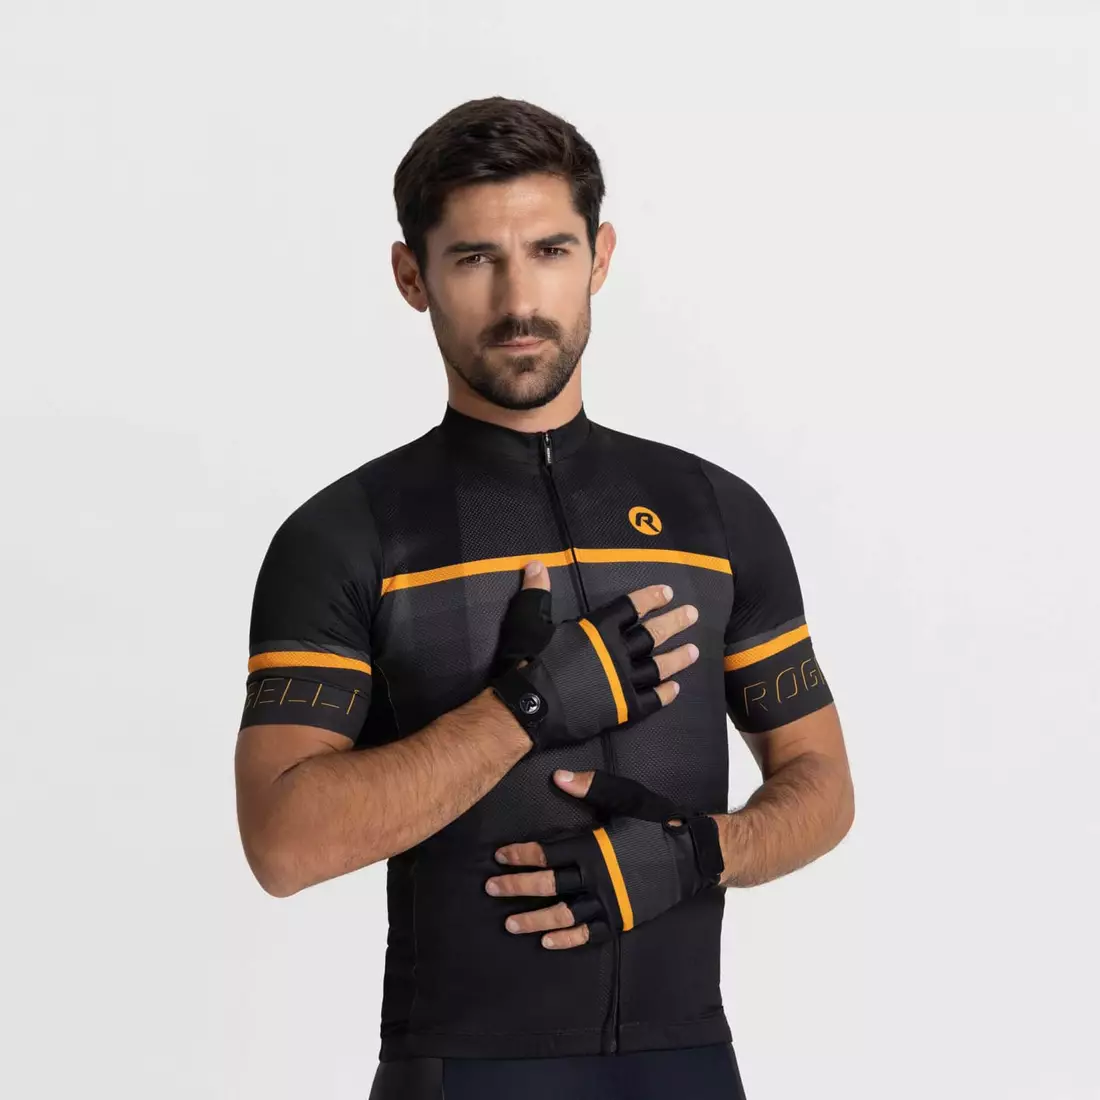 Rogelli HERO II mănuși de ciclism, negru și portocaliu